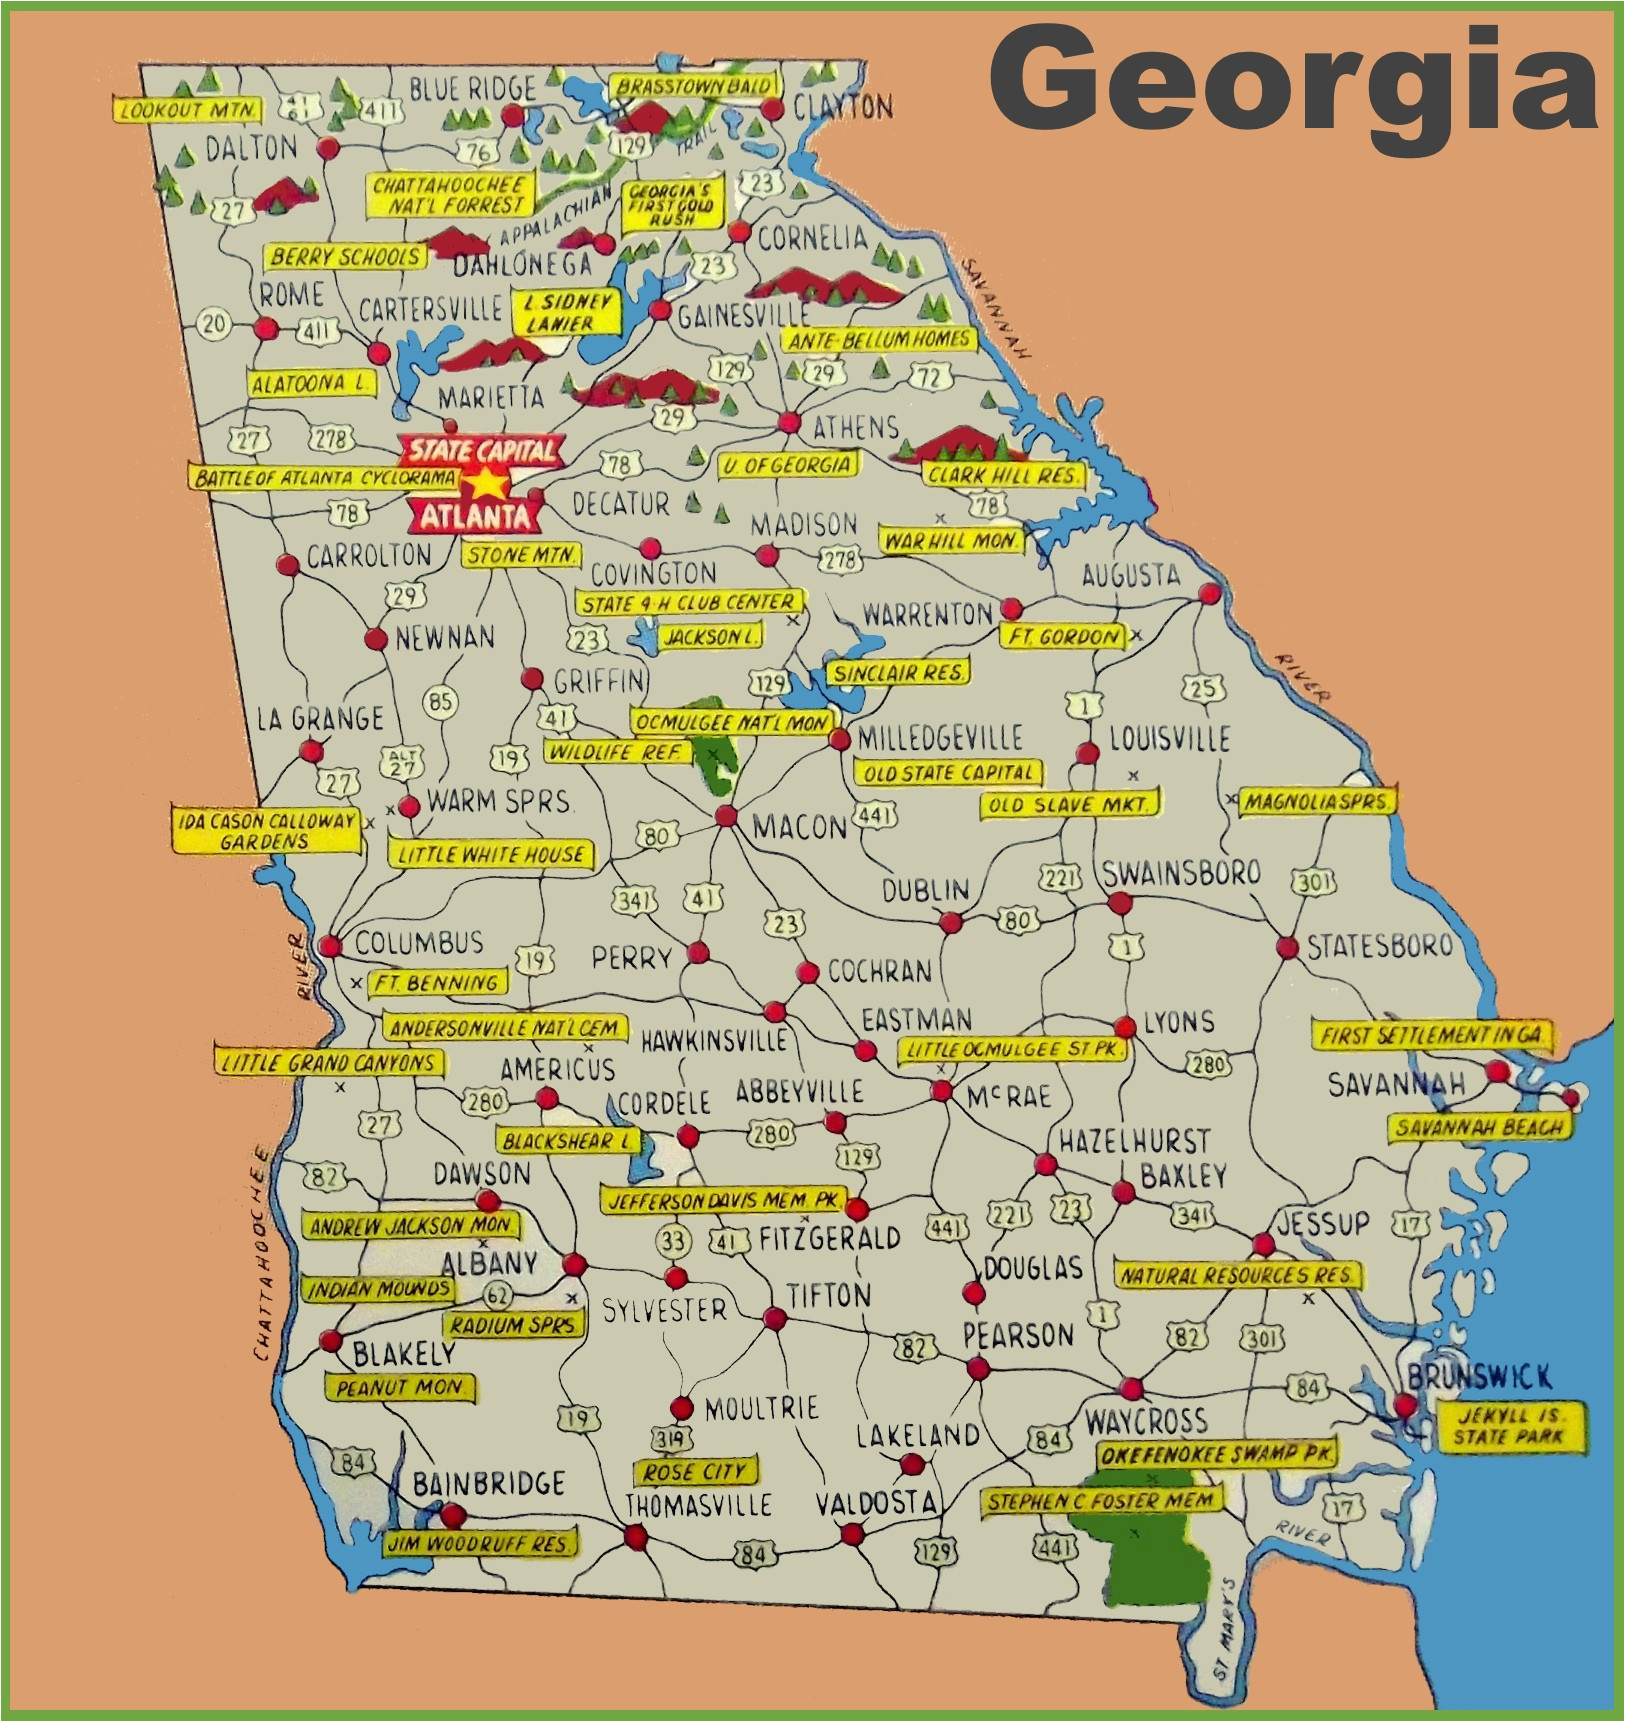 georgia state parks map Georgia State Park Map georgia state parks map